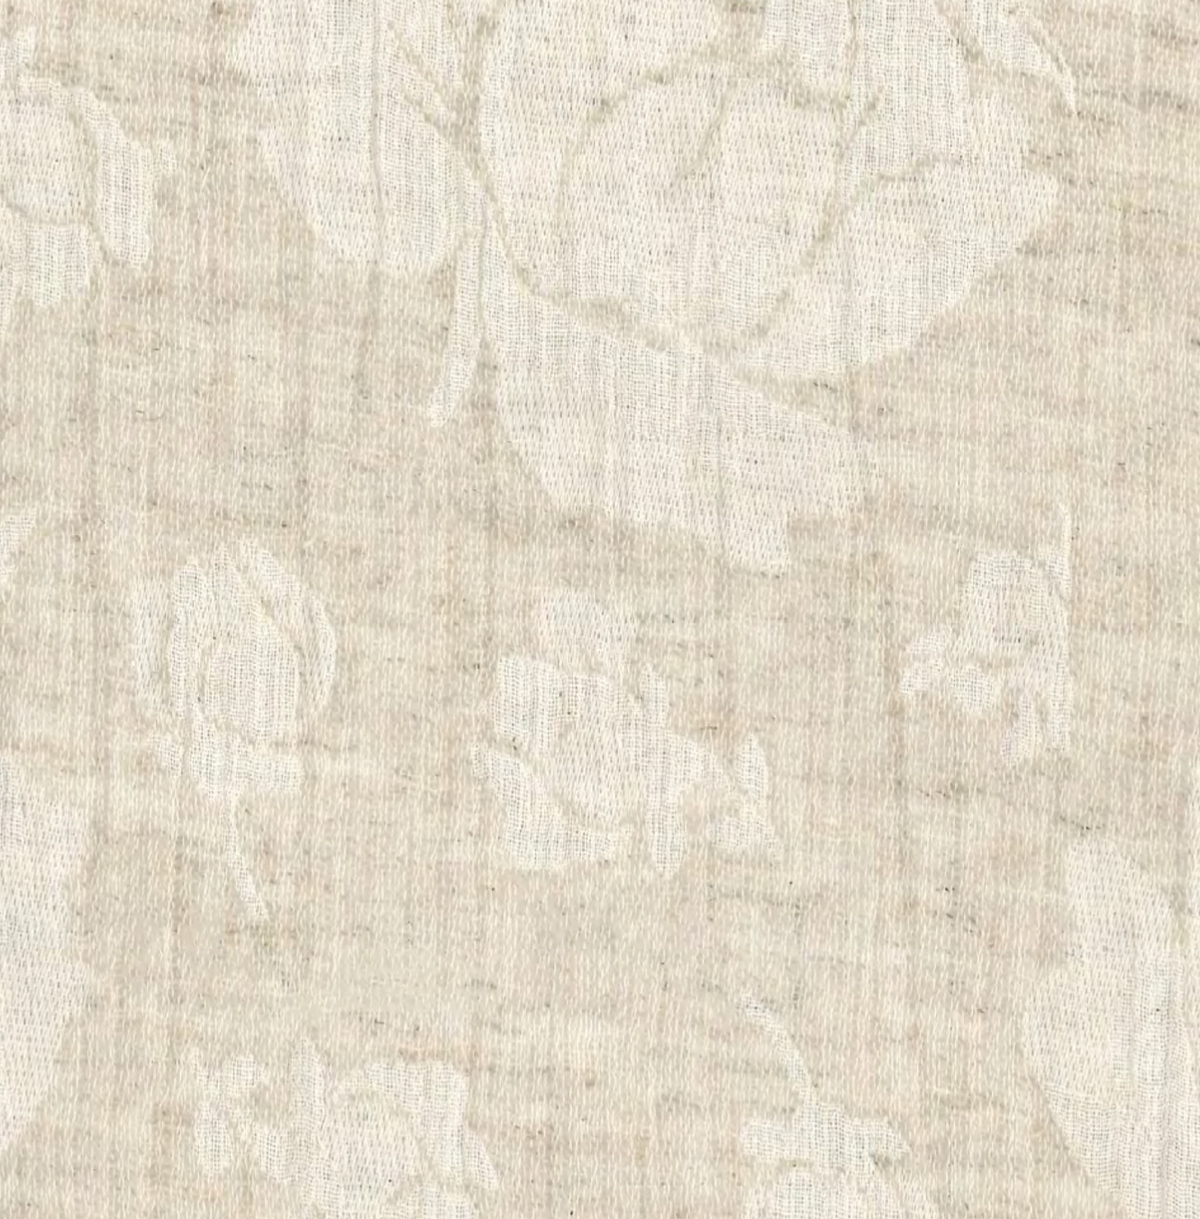 Leinen-Bw-Jacquard natur, 90% Co, 10% Li, ca.135-140cm breit, 175g/lfm, 125g/m², Digitalprint